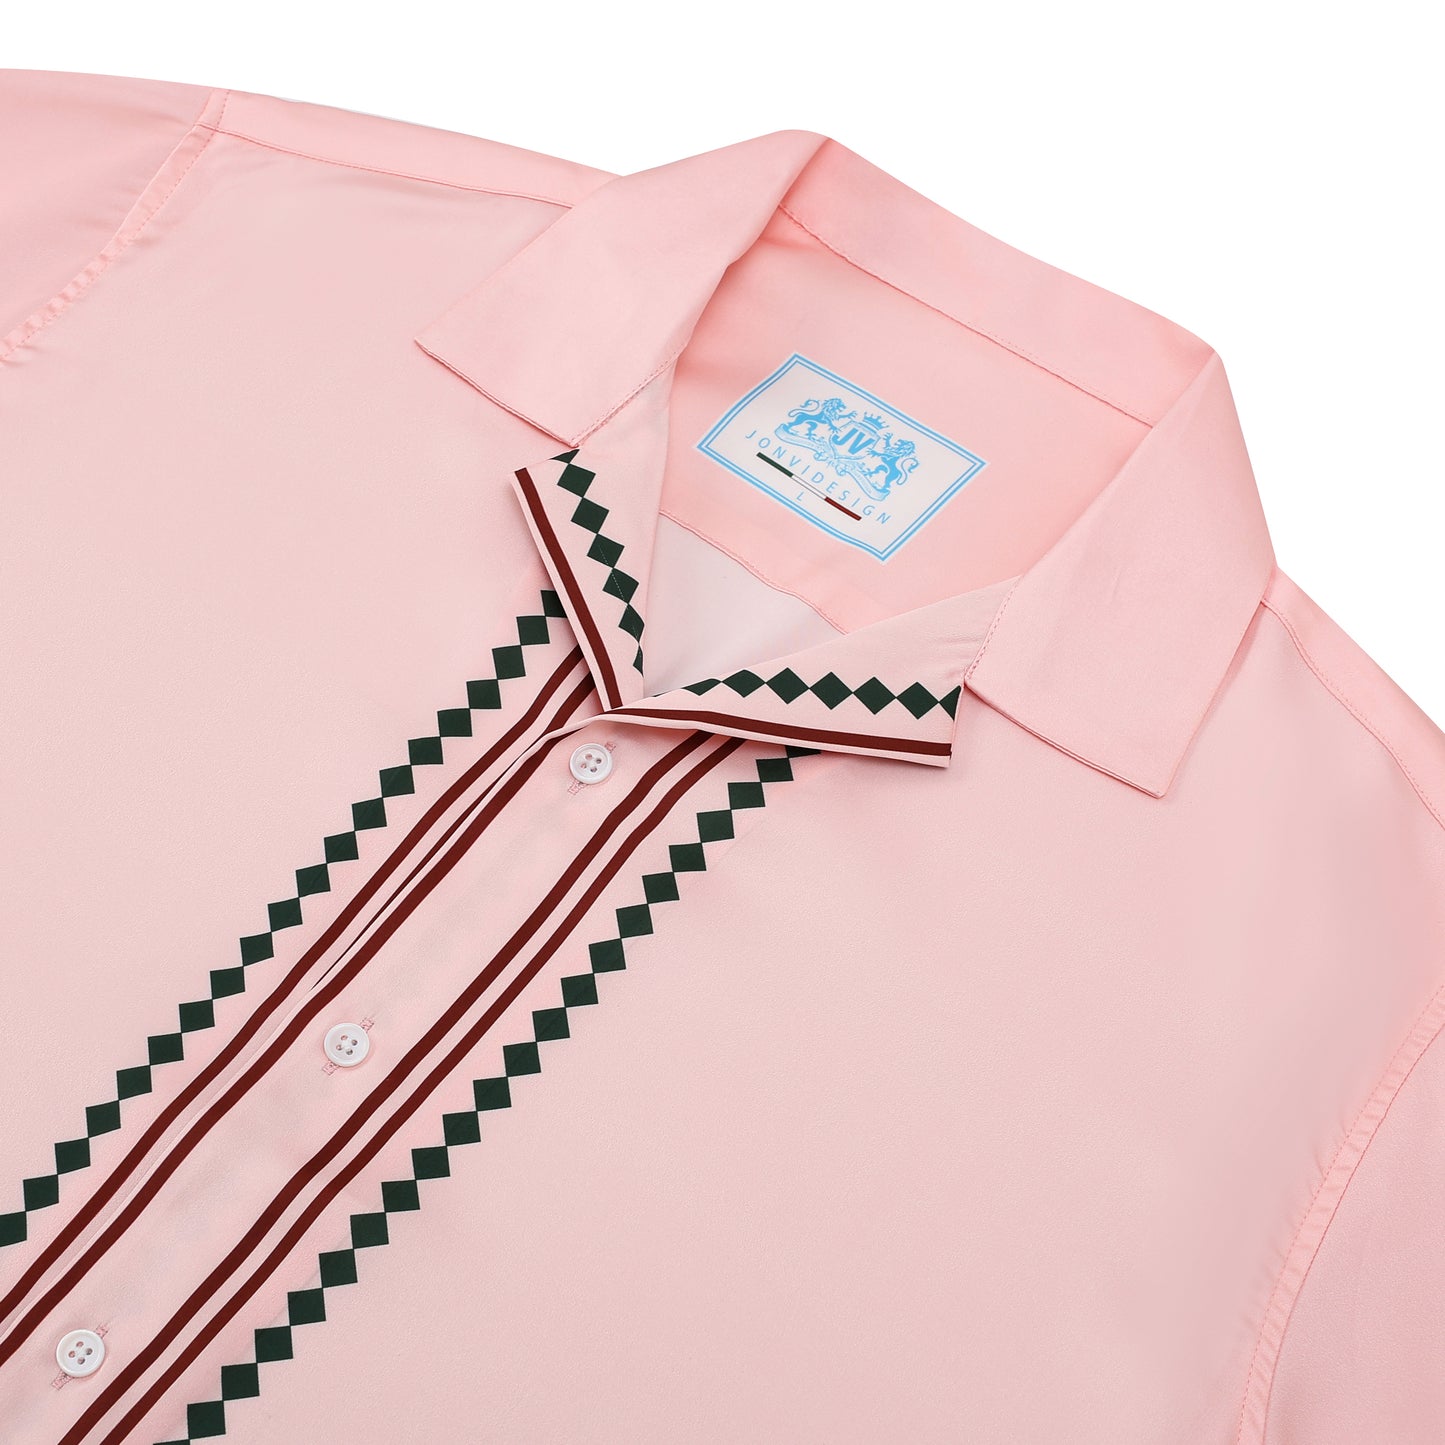 Pink Flower Design Short Sleeve Sports Shirt